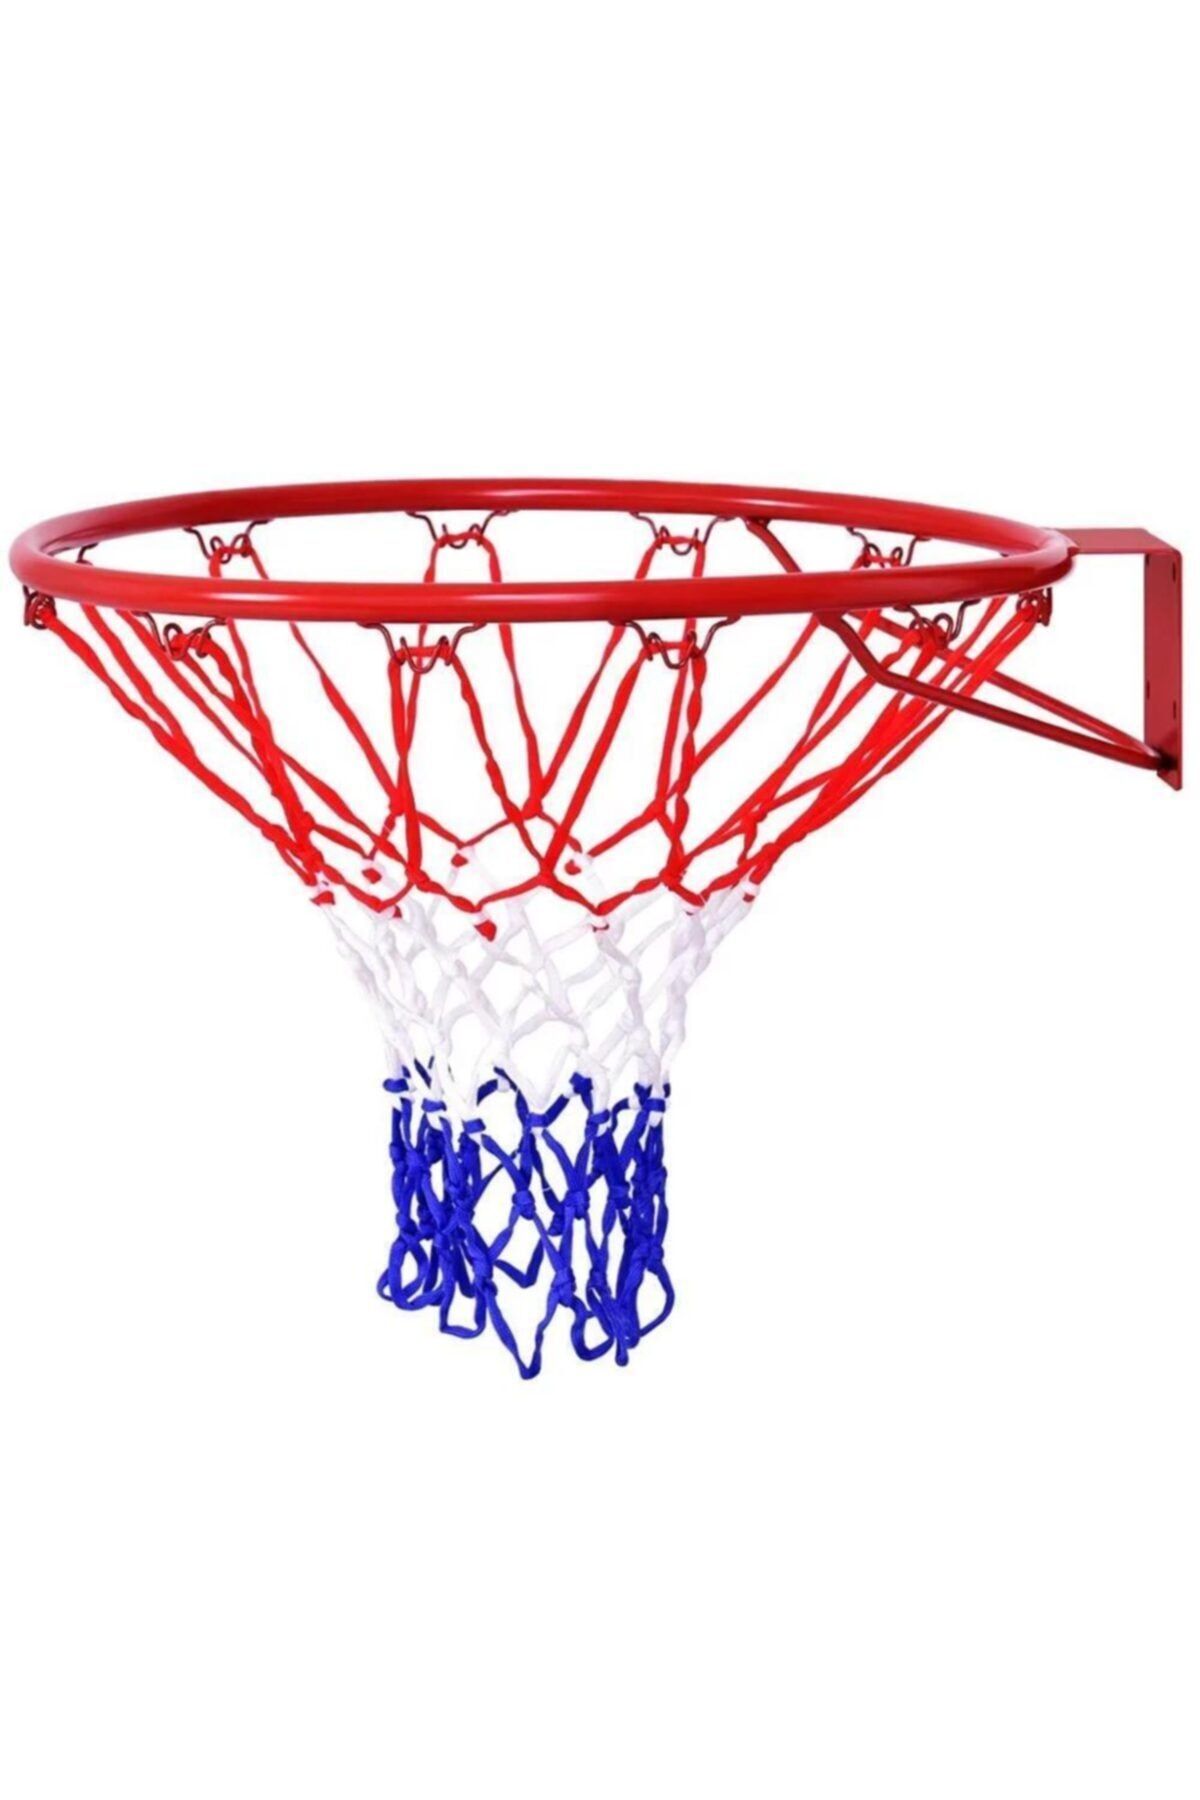 Leyaton Deluxe Basketbol Çemberi + Basketbol Filesi Lyt-01